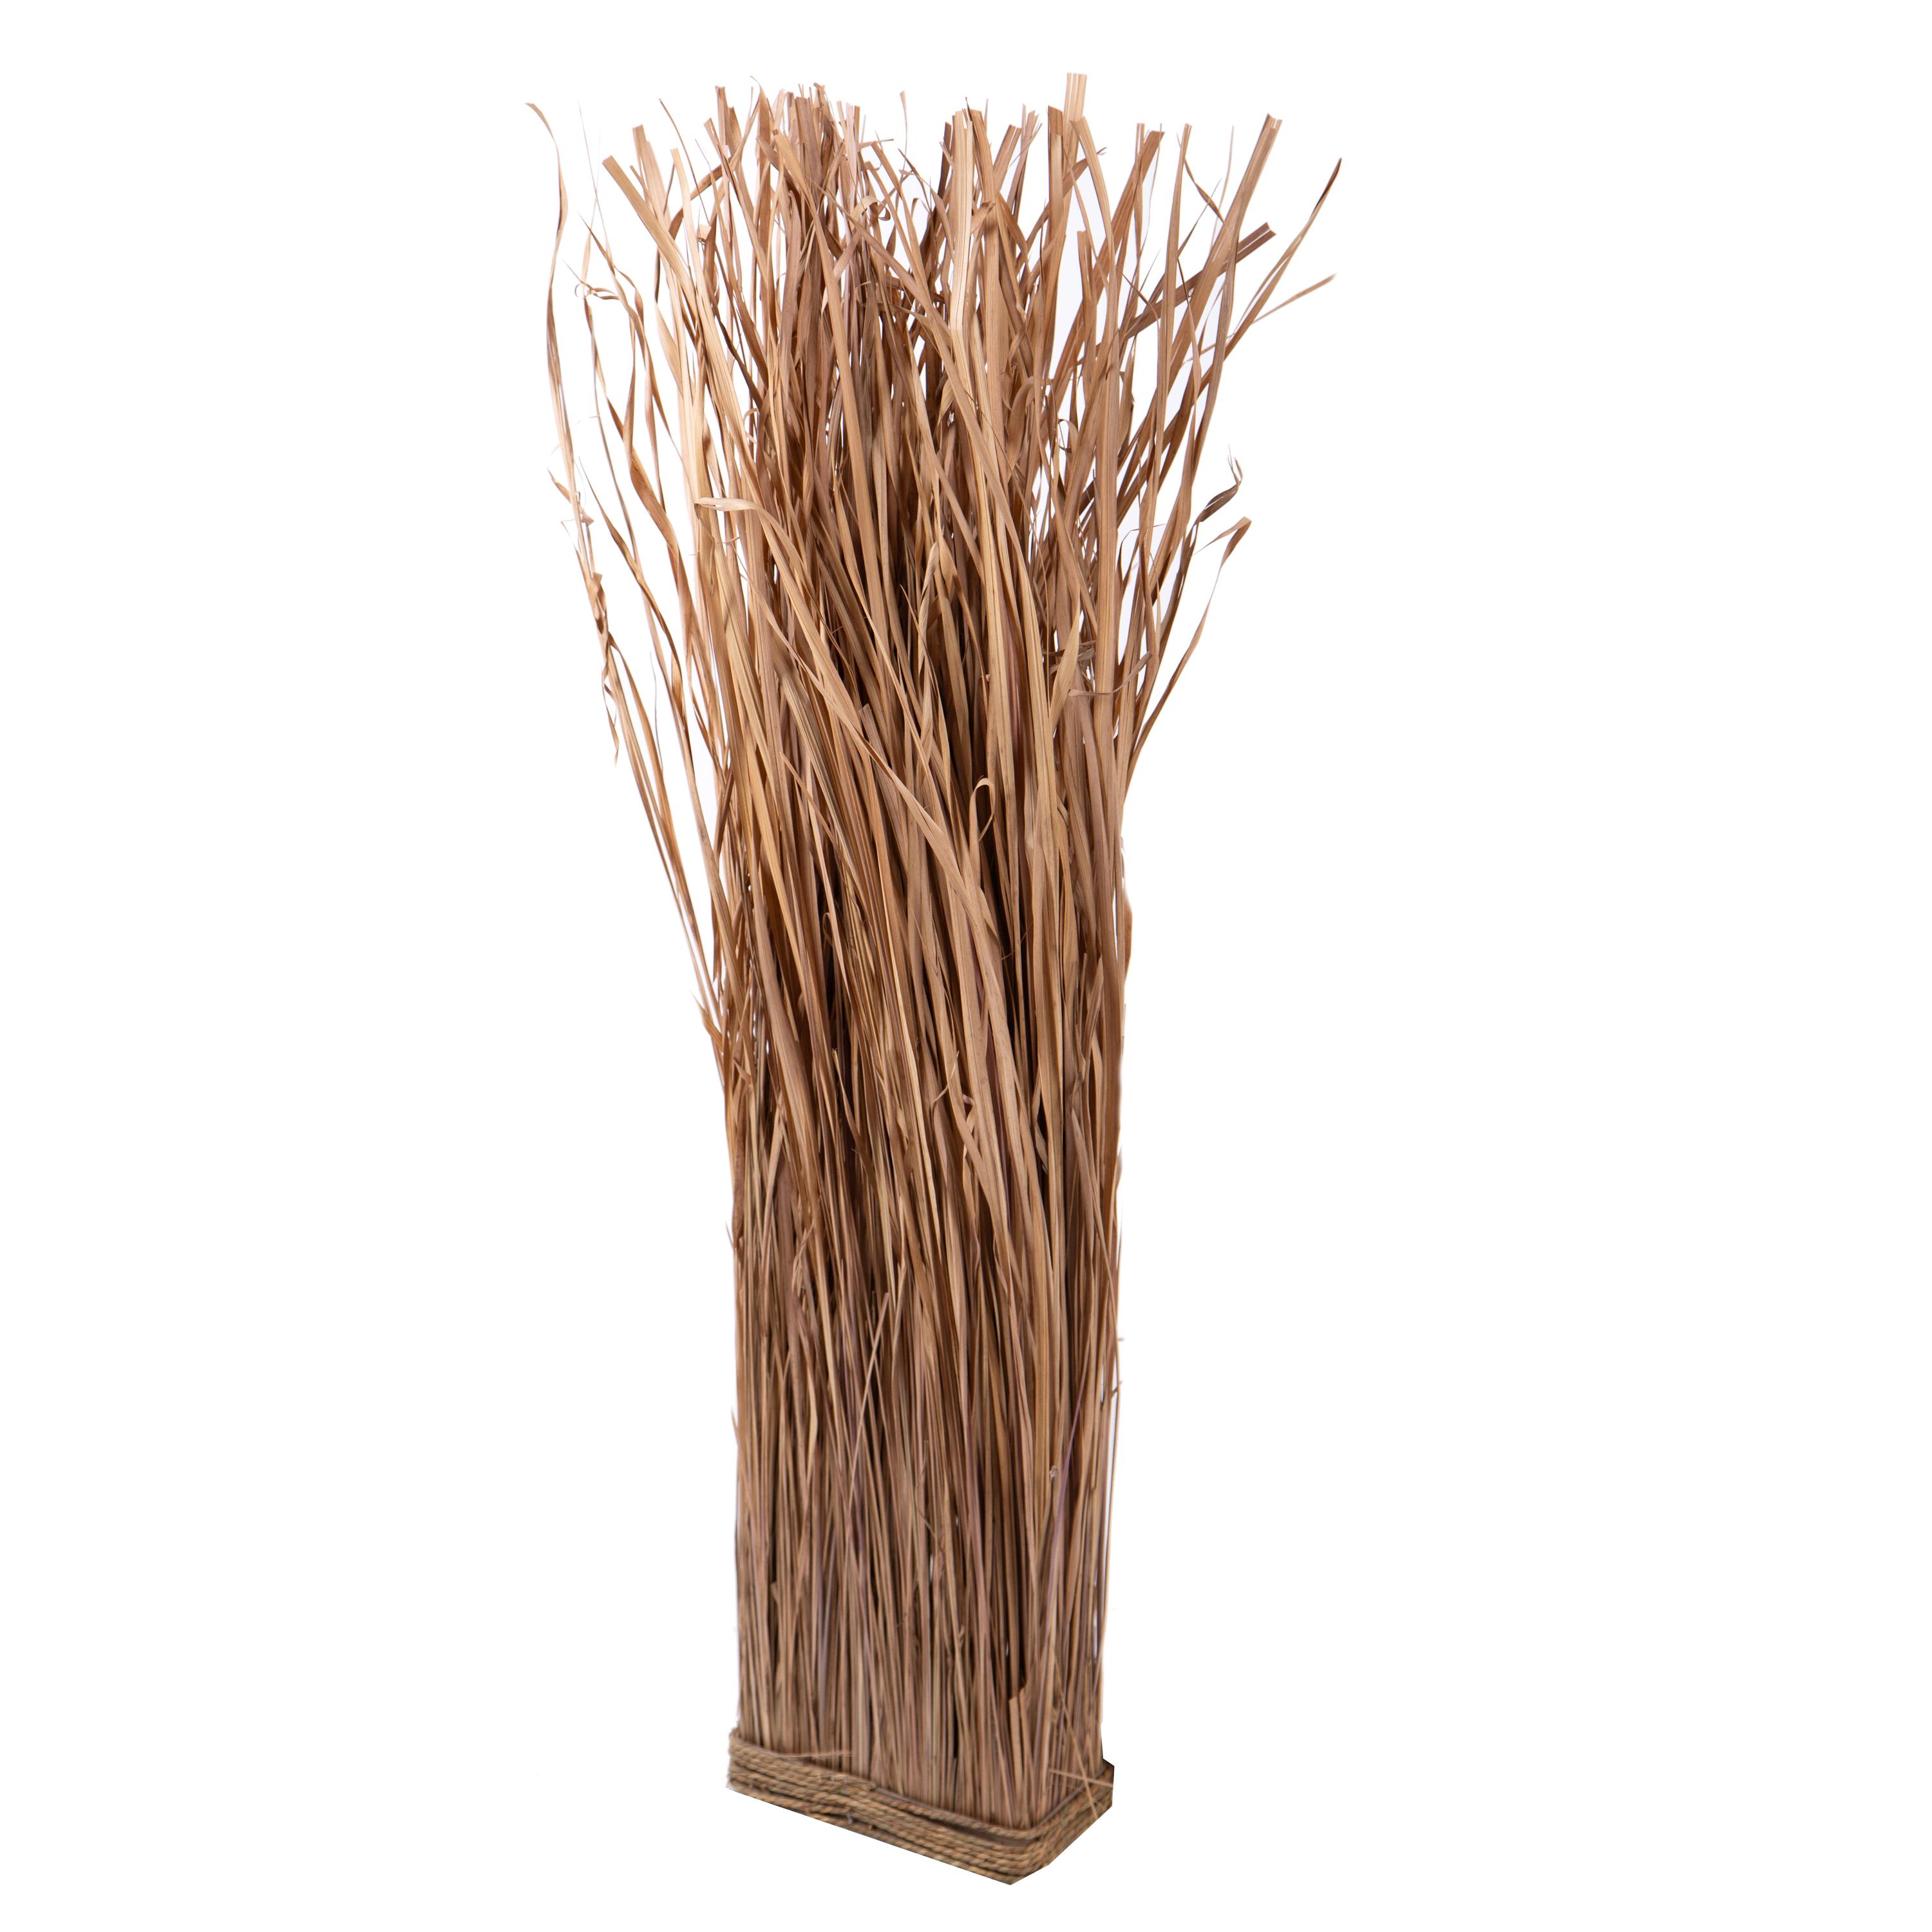 Trockenblumen, Bambus,Manzanit, Bänder und natürliche Strukturen, PARETE ERBA 24X12XH110 CM